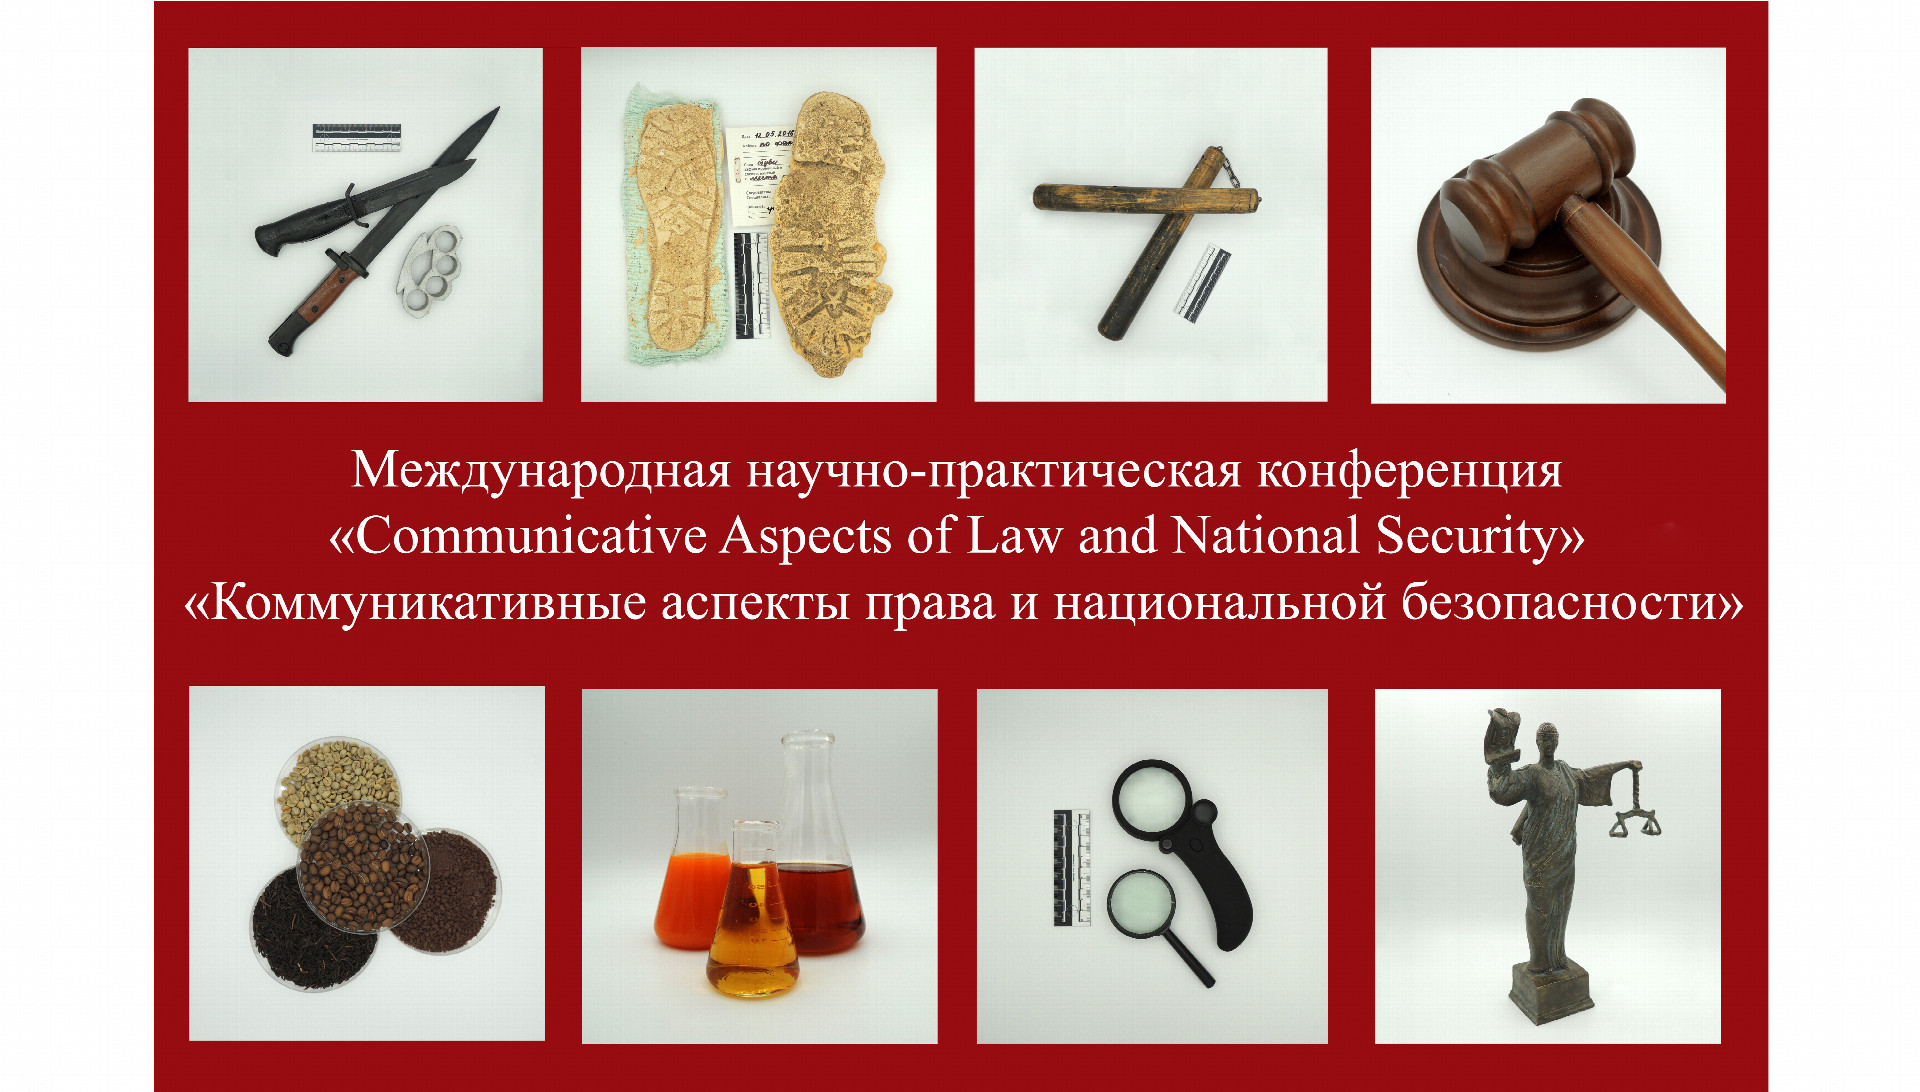 Студенческая конференция ИПиНБ РАНХиГС: Коммуникативные аспекты права и национальной безопасности